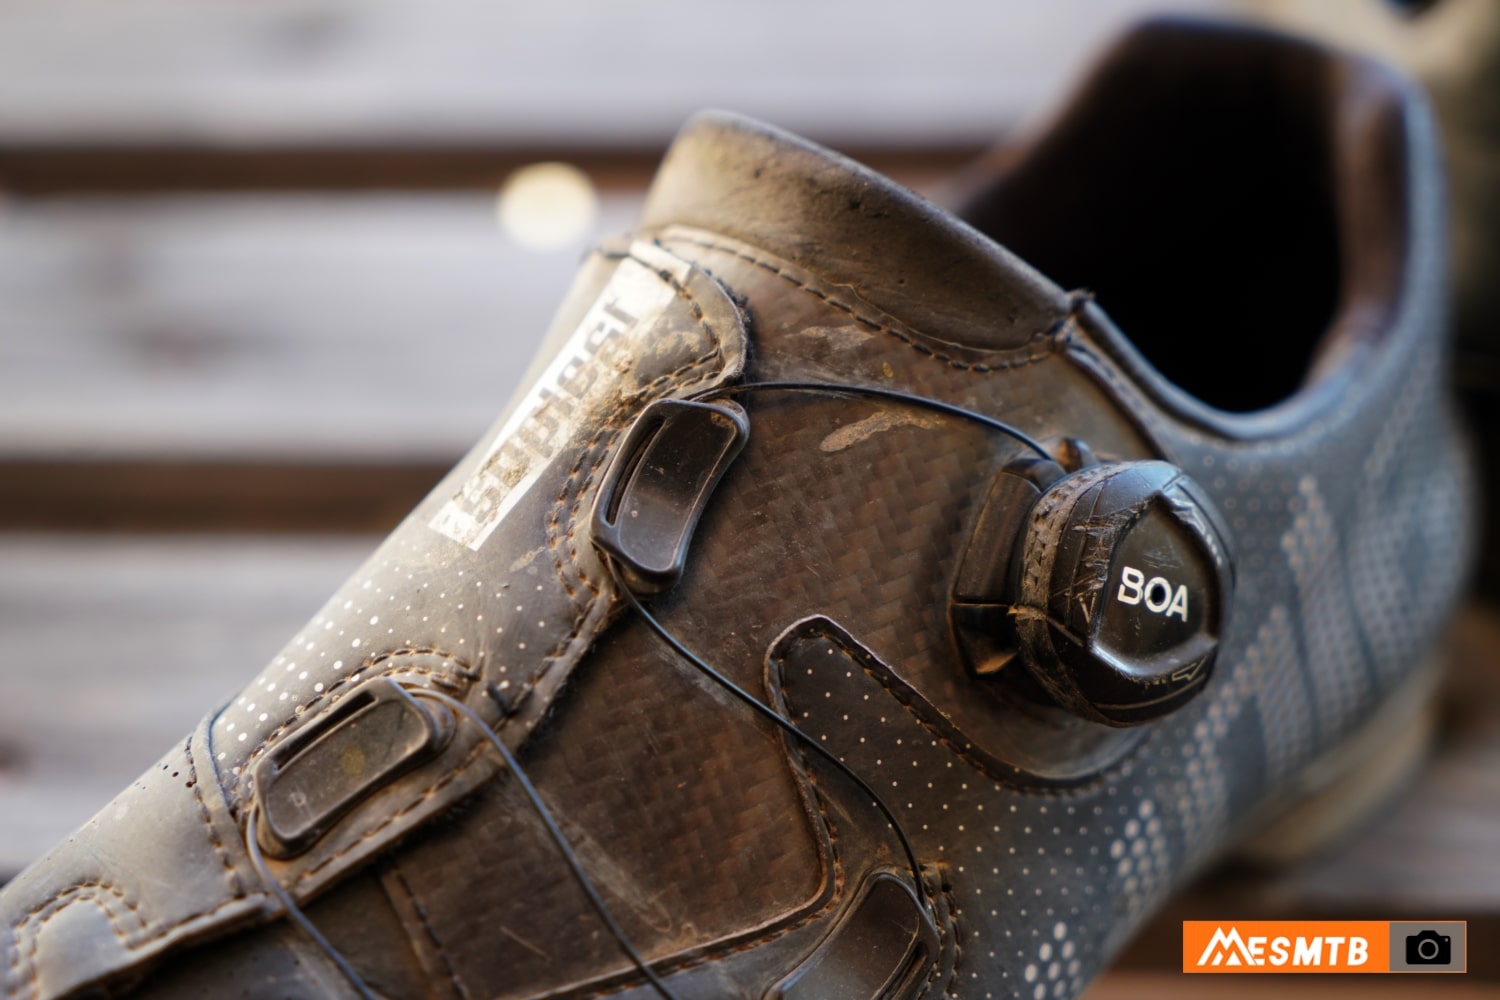 Zapatillas de ciclismo Suplest: calidad, comodidad e innovación